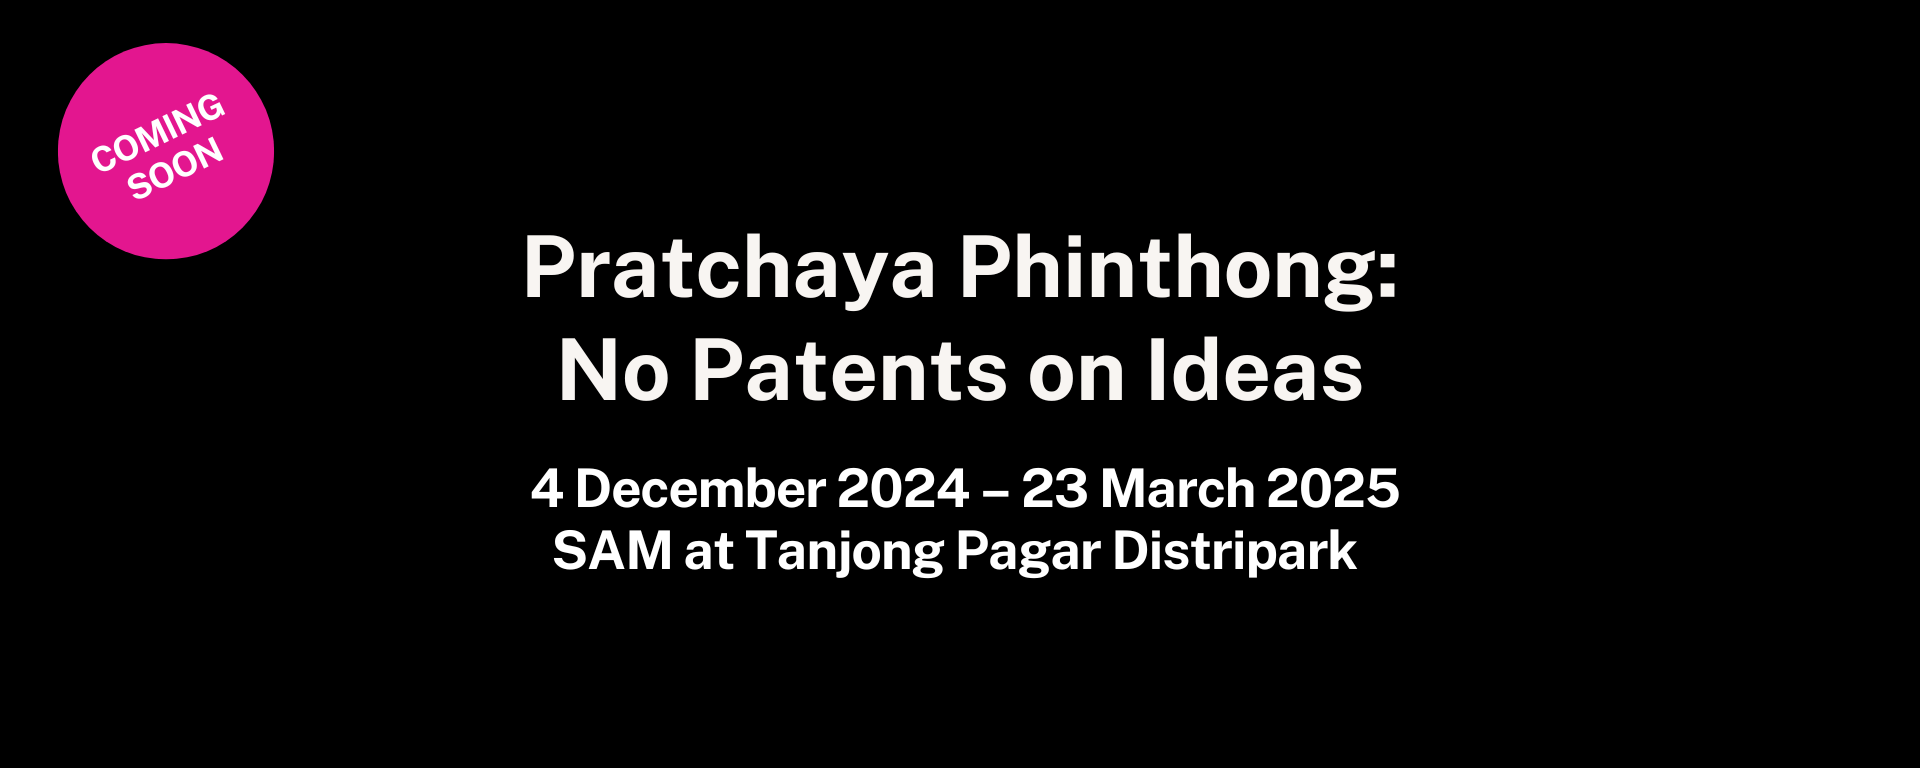 Pratchaya Phinthong: No Patents on Ideas